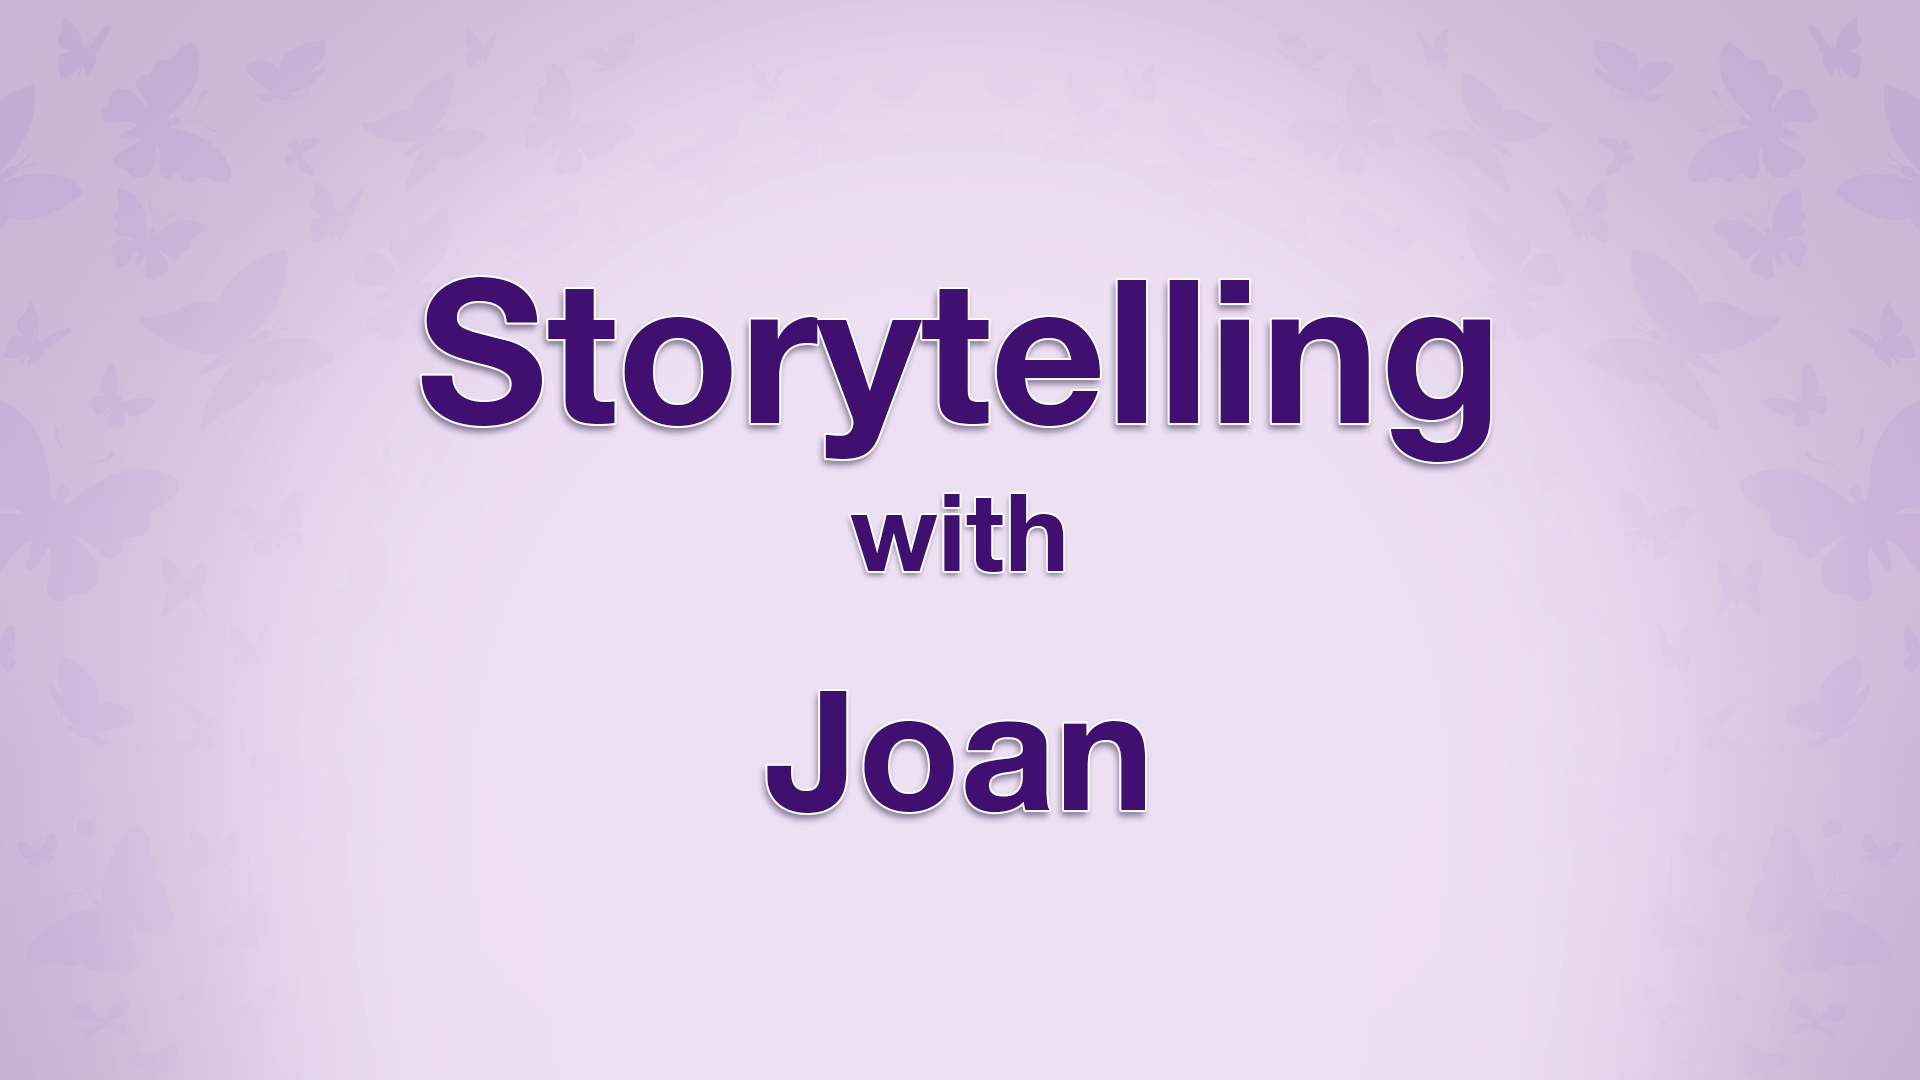 HEAR JOANS'S STORY